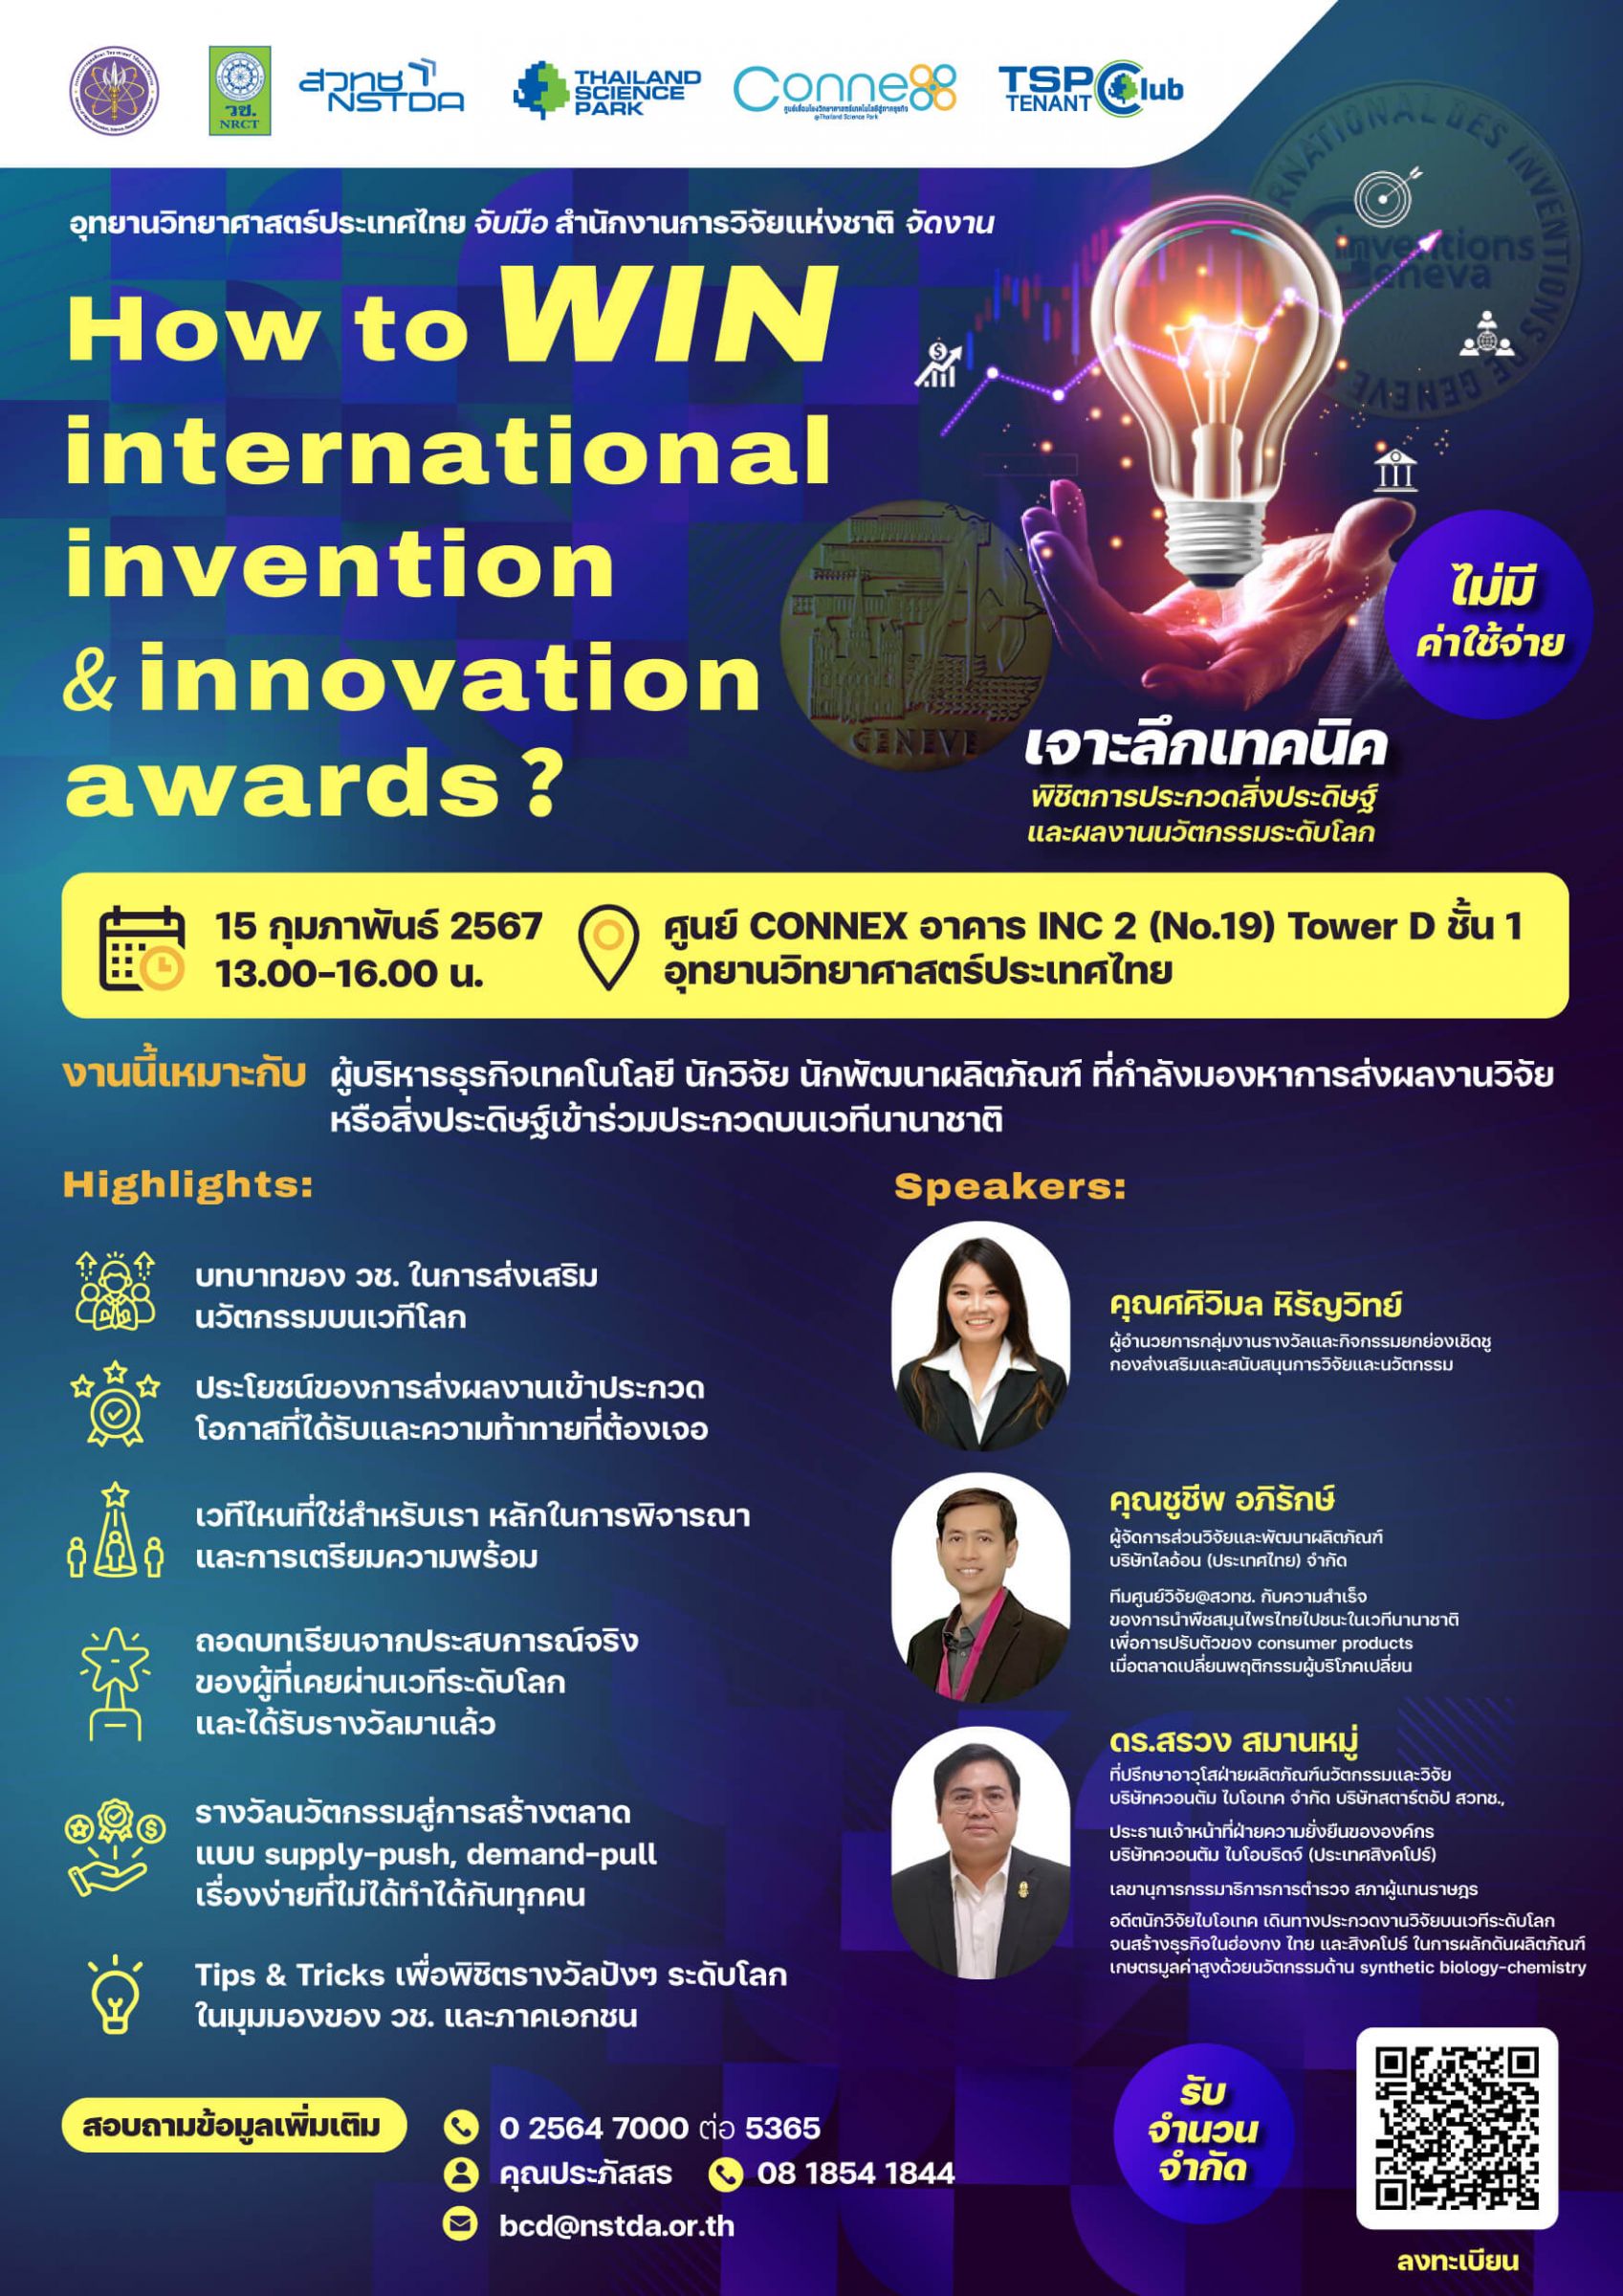 ขอเชิญเข้าร่วมสัมมนา How to WIN International Invention & Innovation Awards? ไม่มีค่าใช้จ่าย รับจำนวนจำกัด